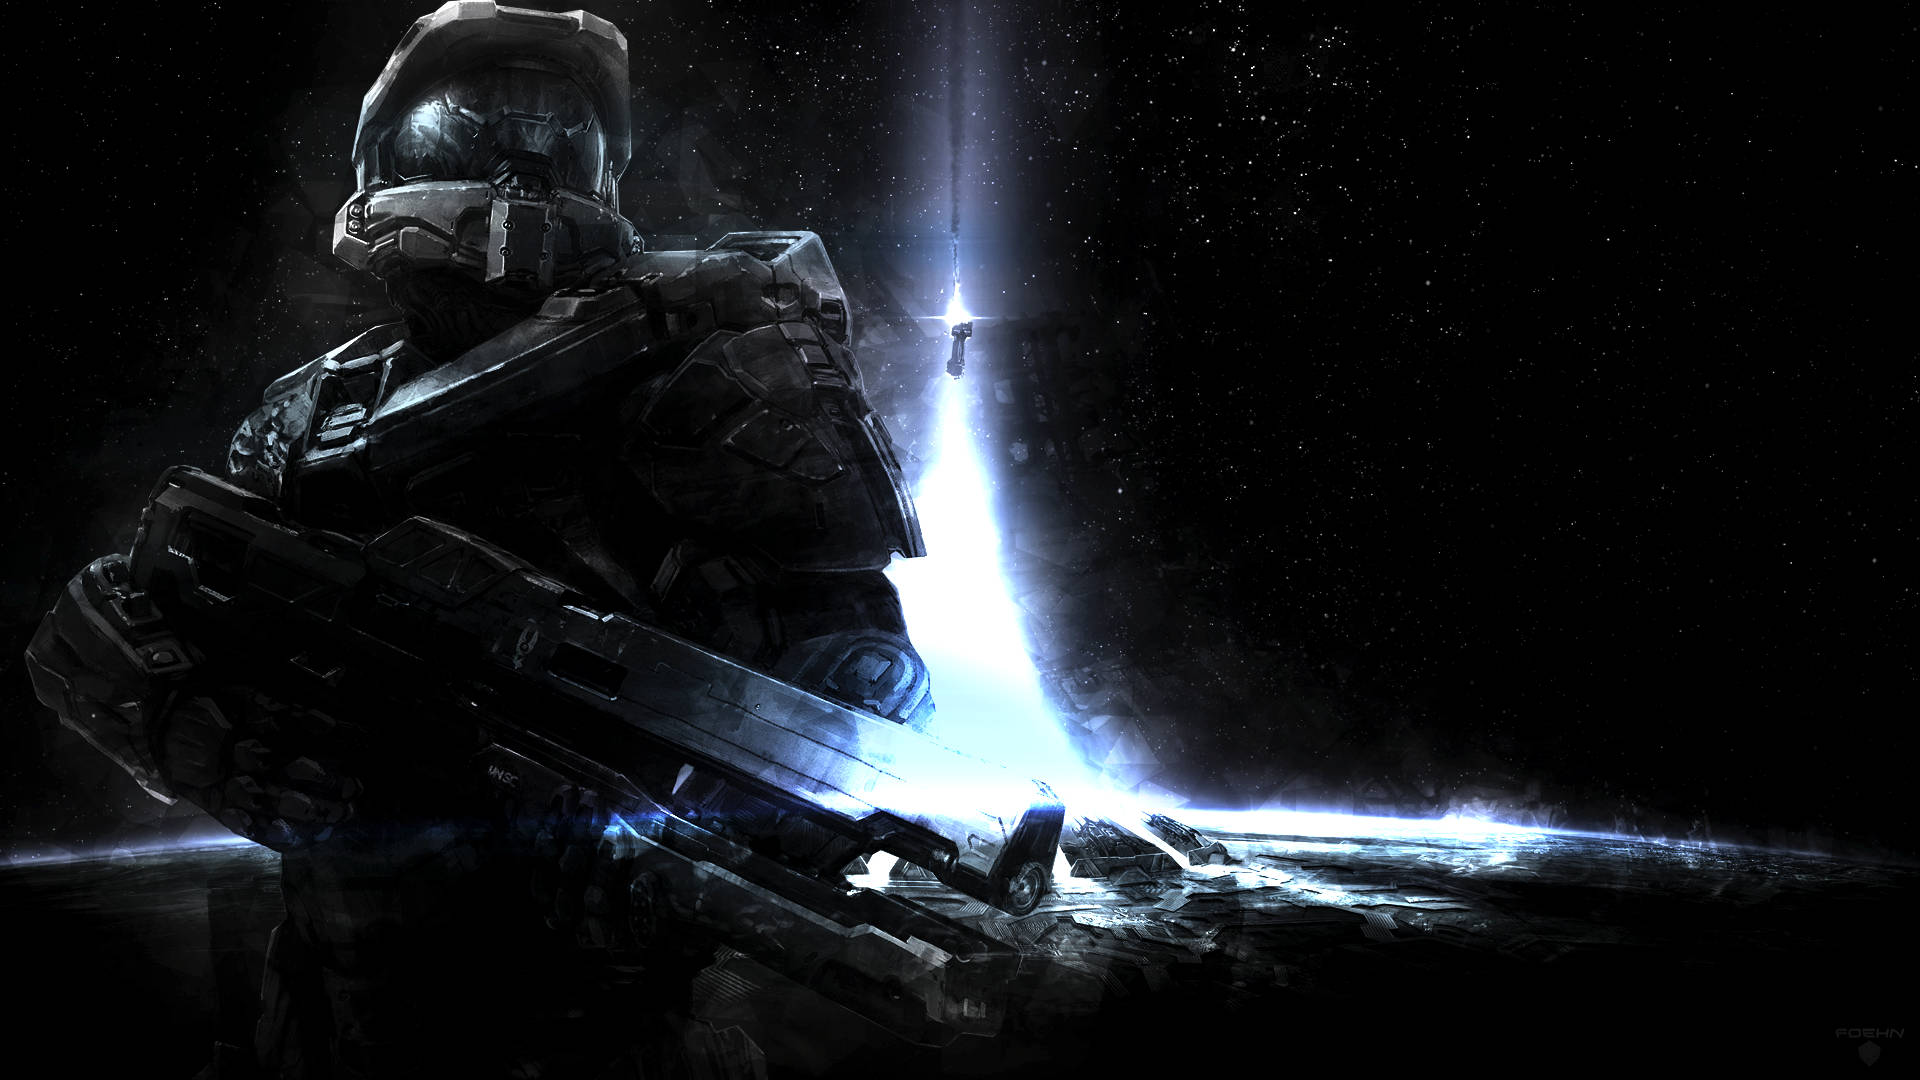 Halo 4 Interstellar Spartan Warrior